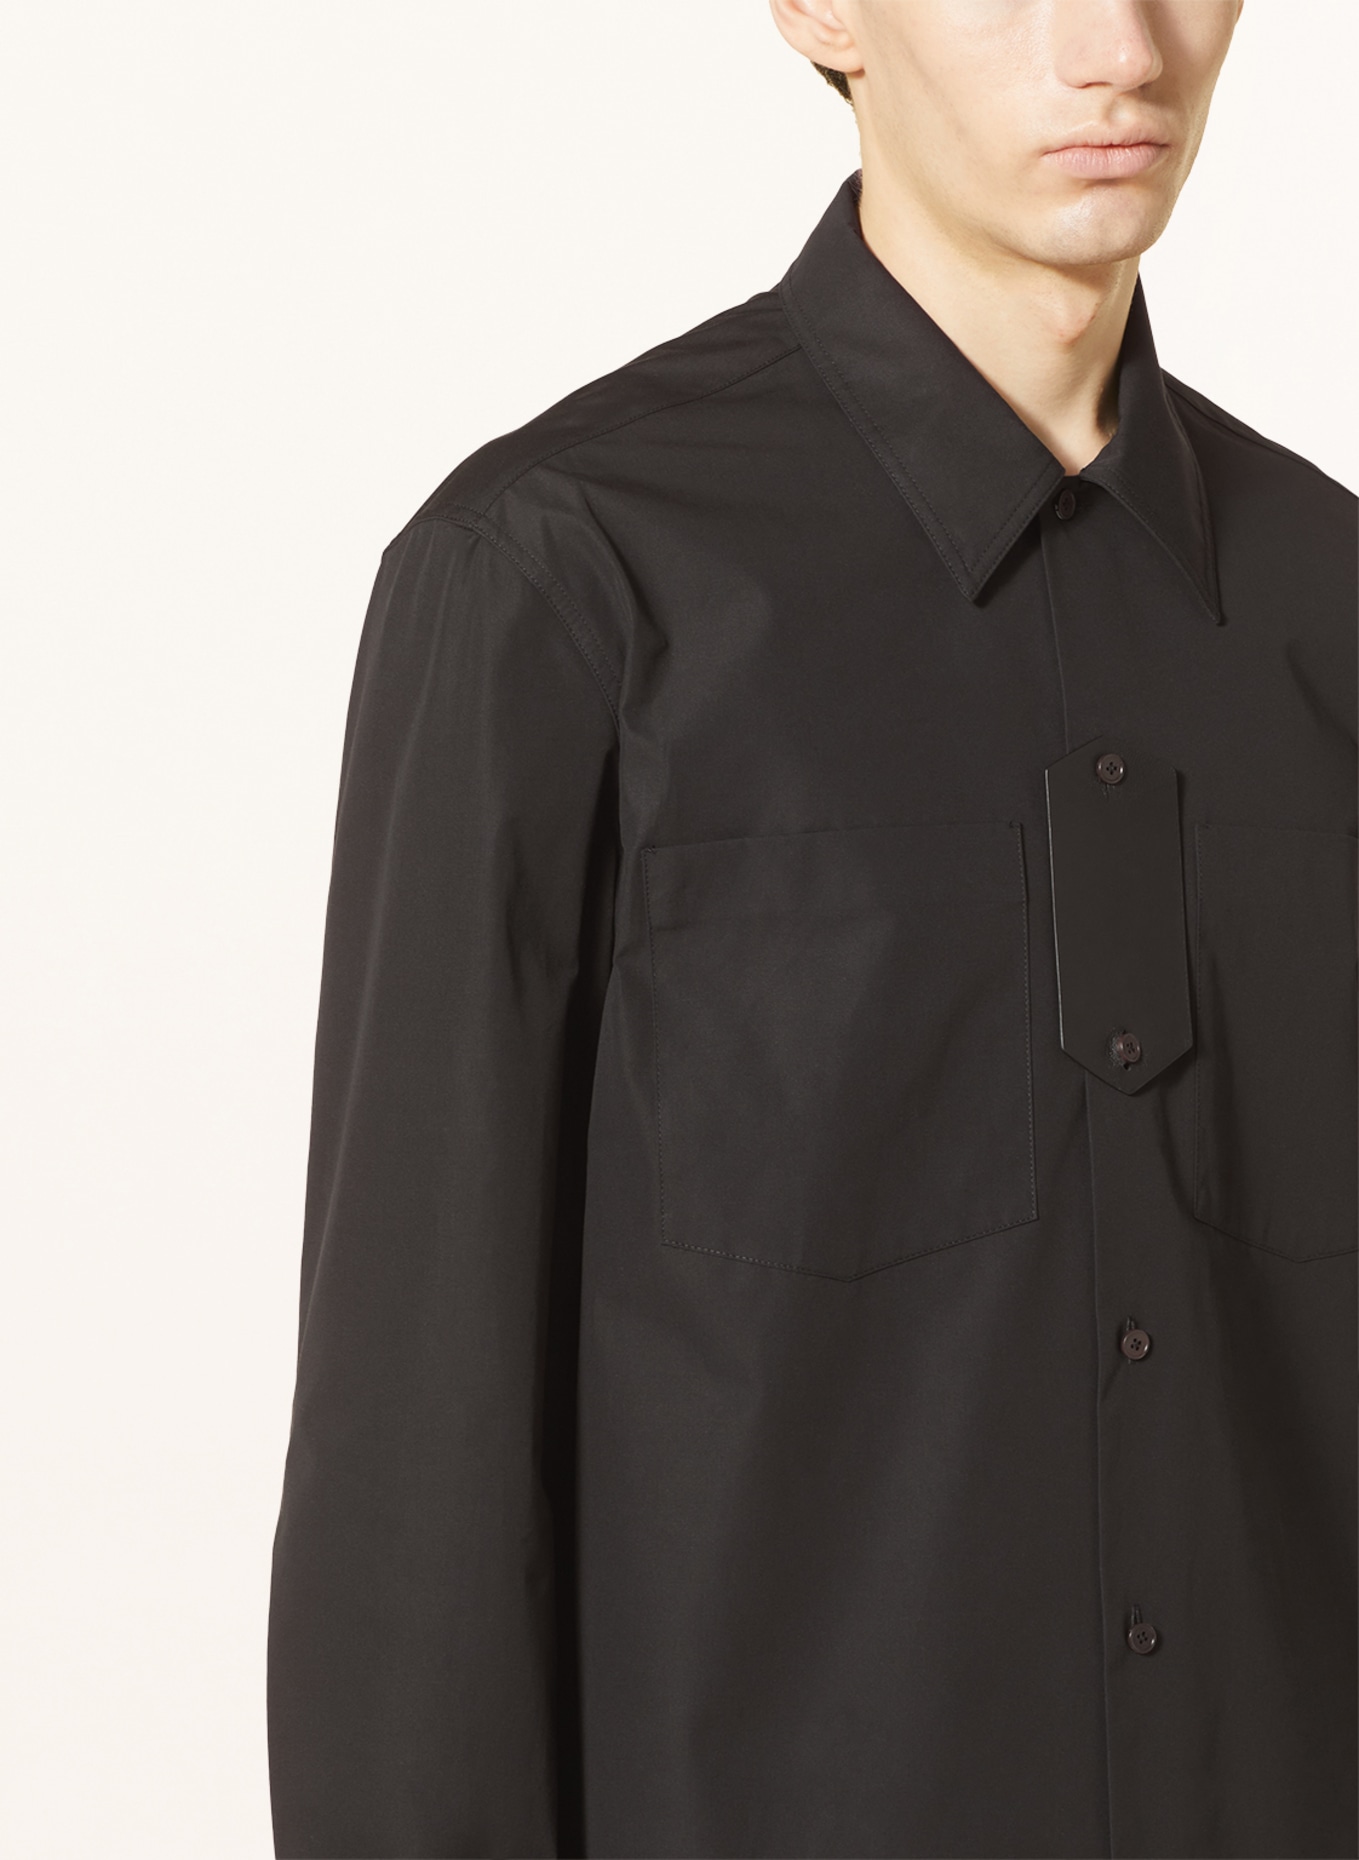 JIL SANDER Shirt comfort fit, Color: BLACK (Image 4)